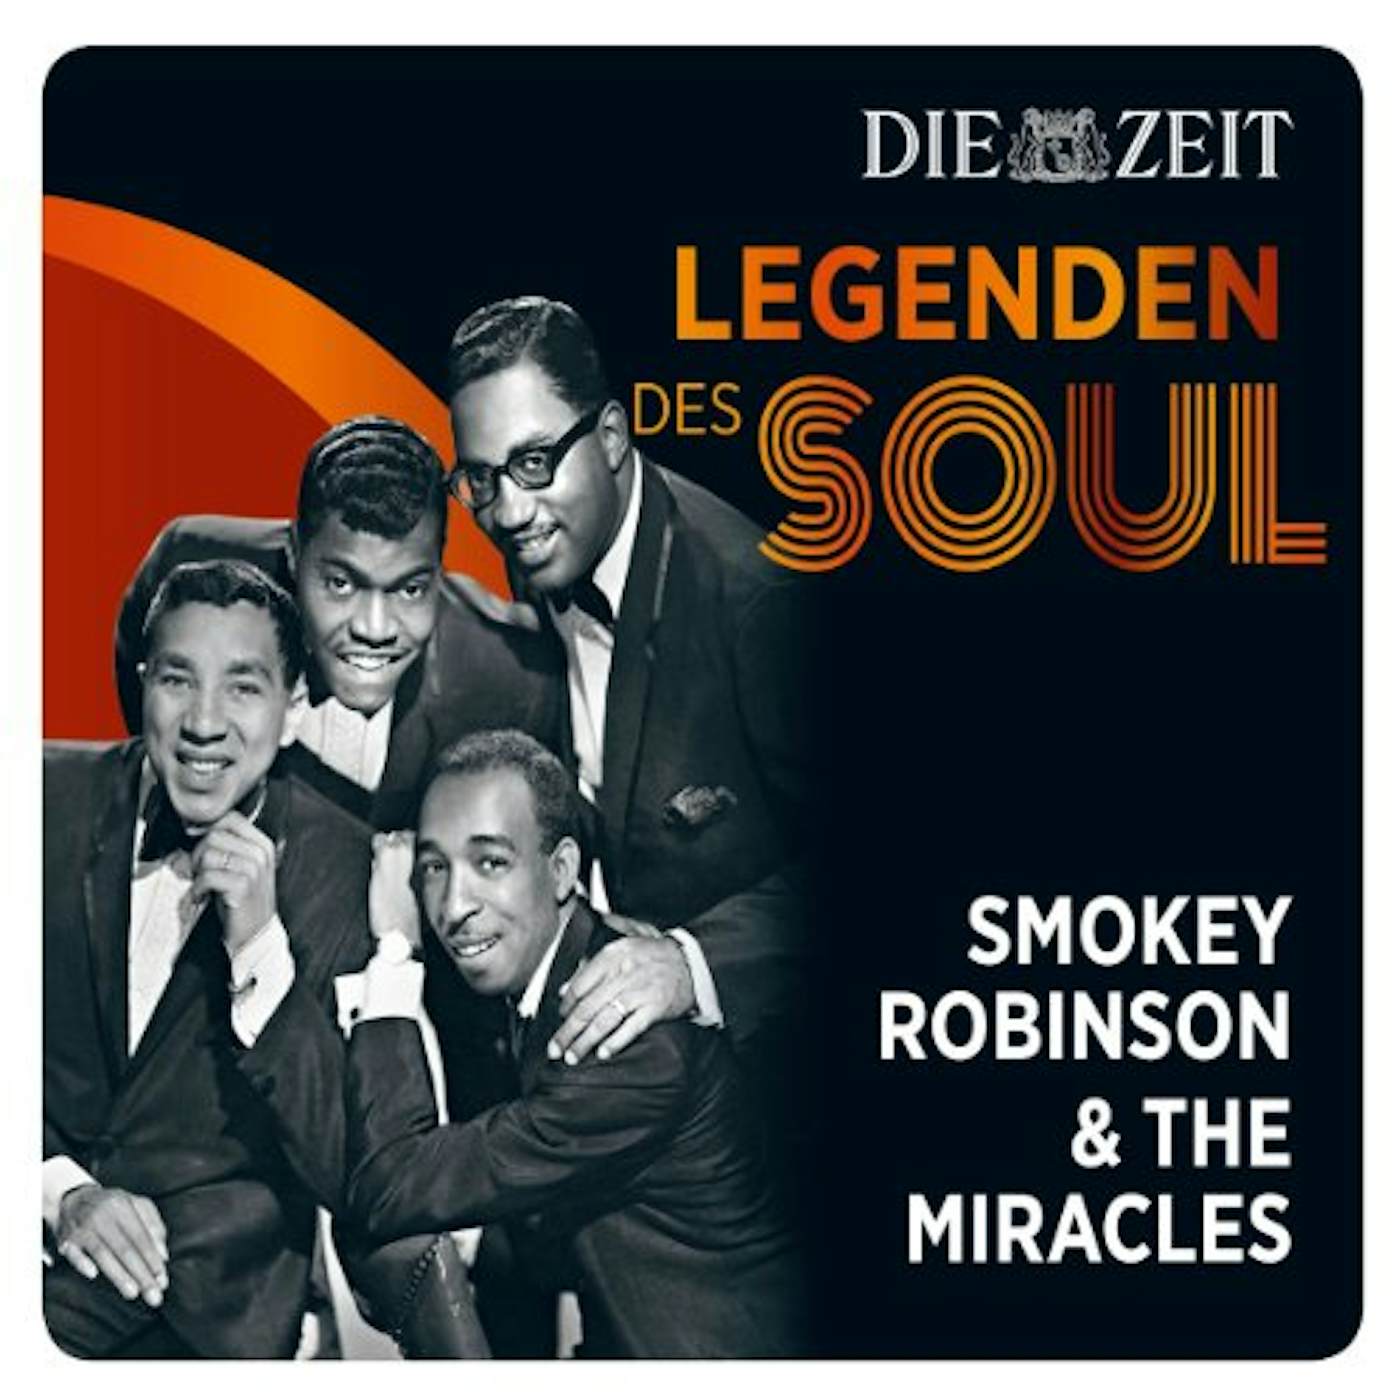 Smokey Robinson & The Miracles DIE ZEIT EDITION-LEGENDEN DES SOUL CD